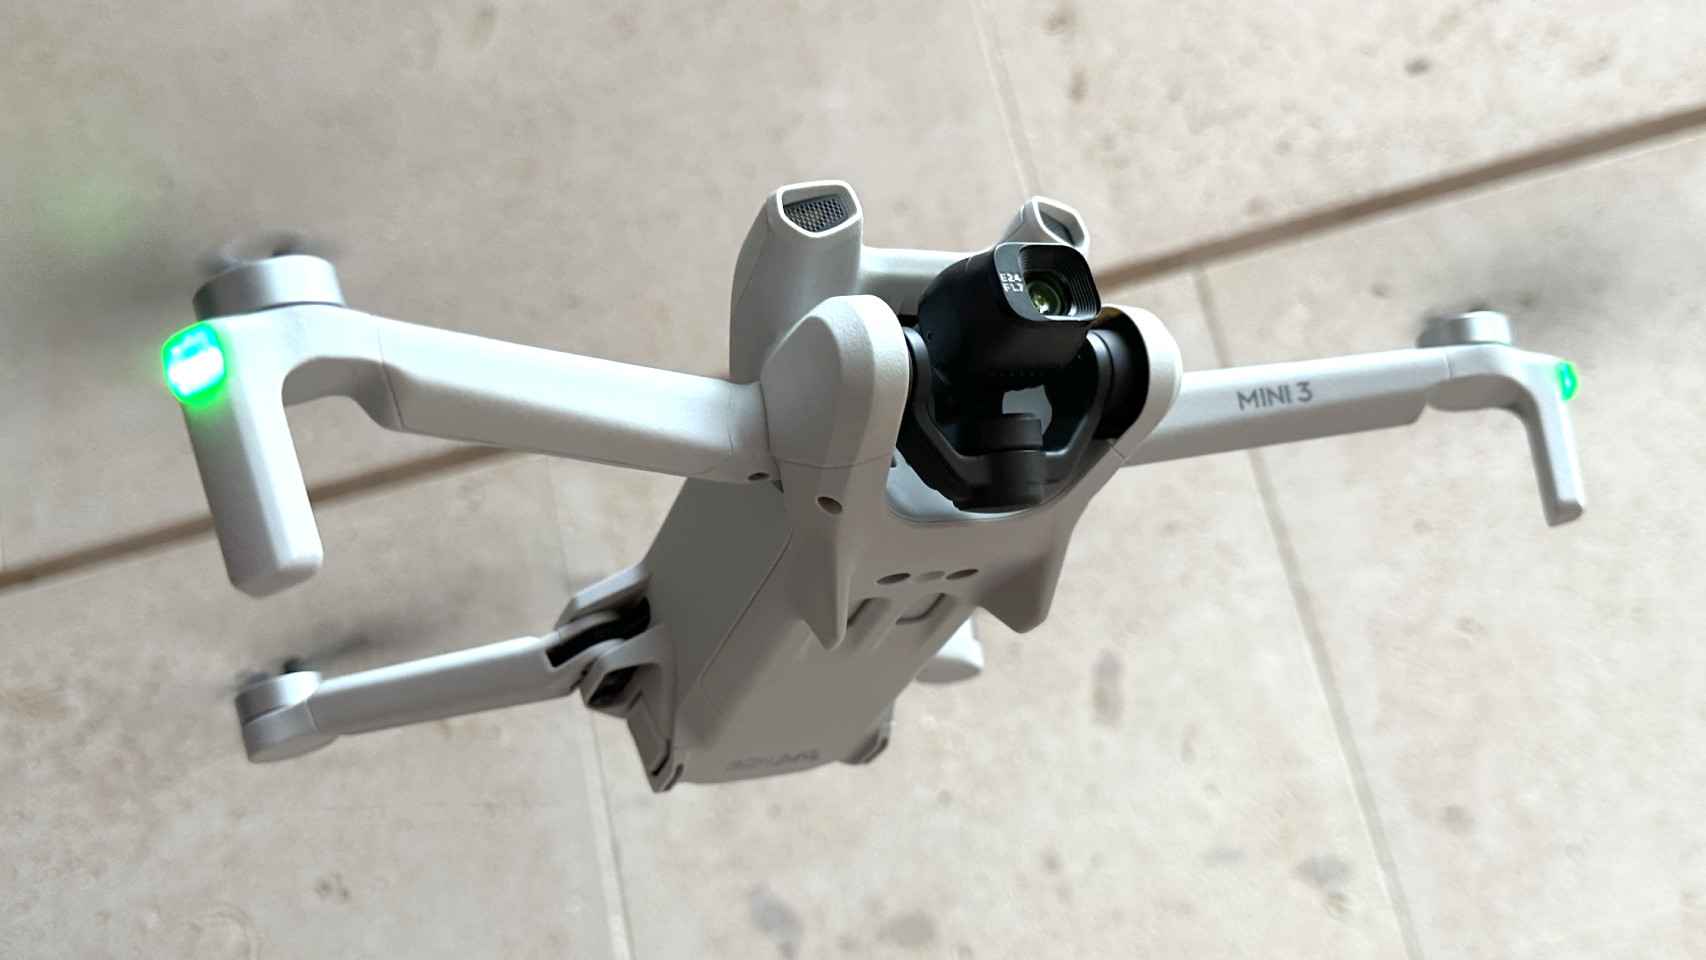 He probado el nuevo DJI Mini 3: este es el dron ultracompacto que